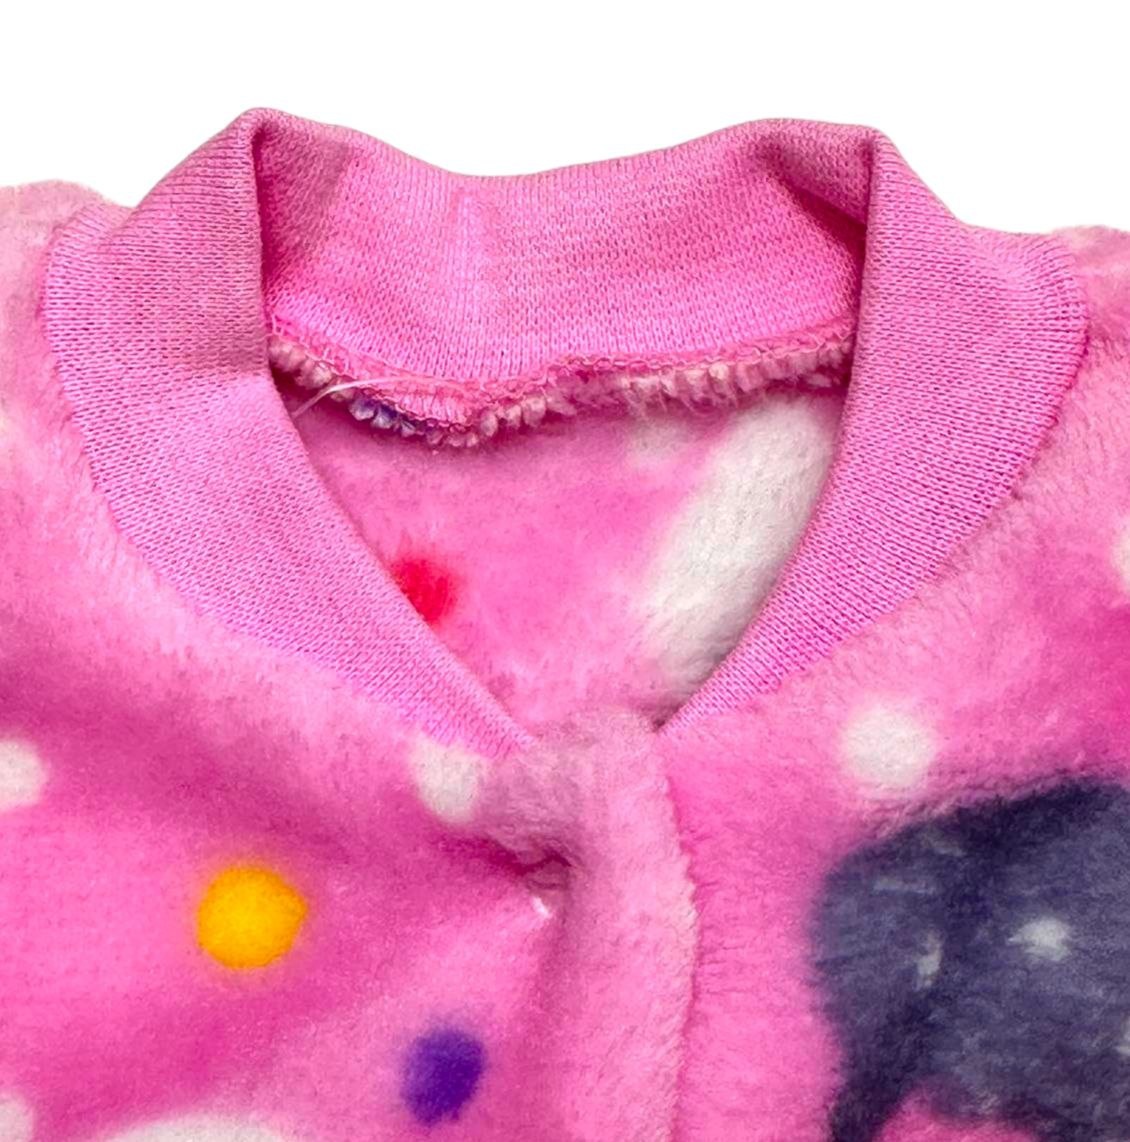 Ясельний трикотажний комбінезон для новорожденного. Комбинезон на кнопке цветная рваная махра розового цвета. ТМ «Пташка Украина»